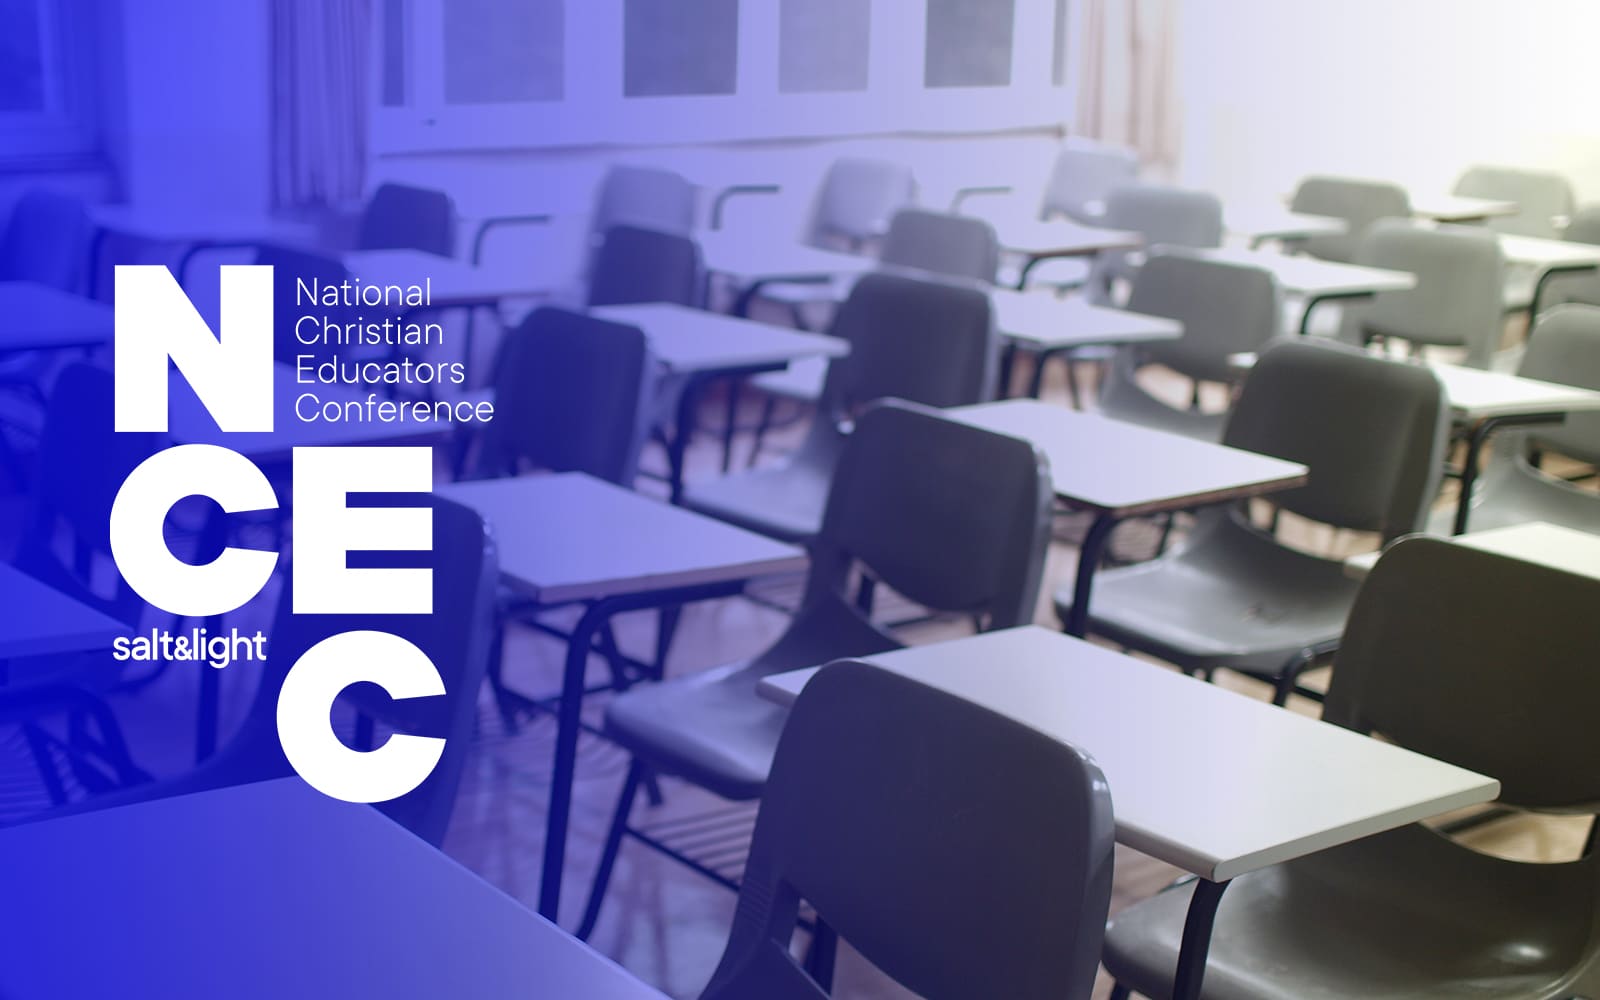 Sign up for the Salt&Light National Christian Educators Conference at https://saltandlig.ht/ncec2023